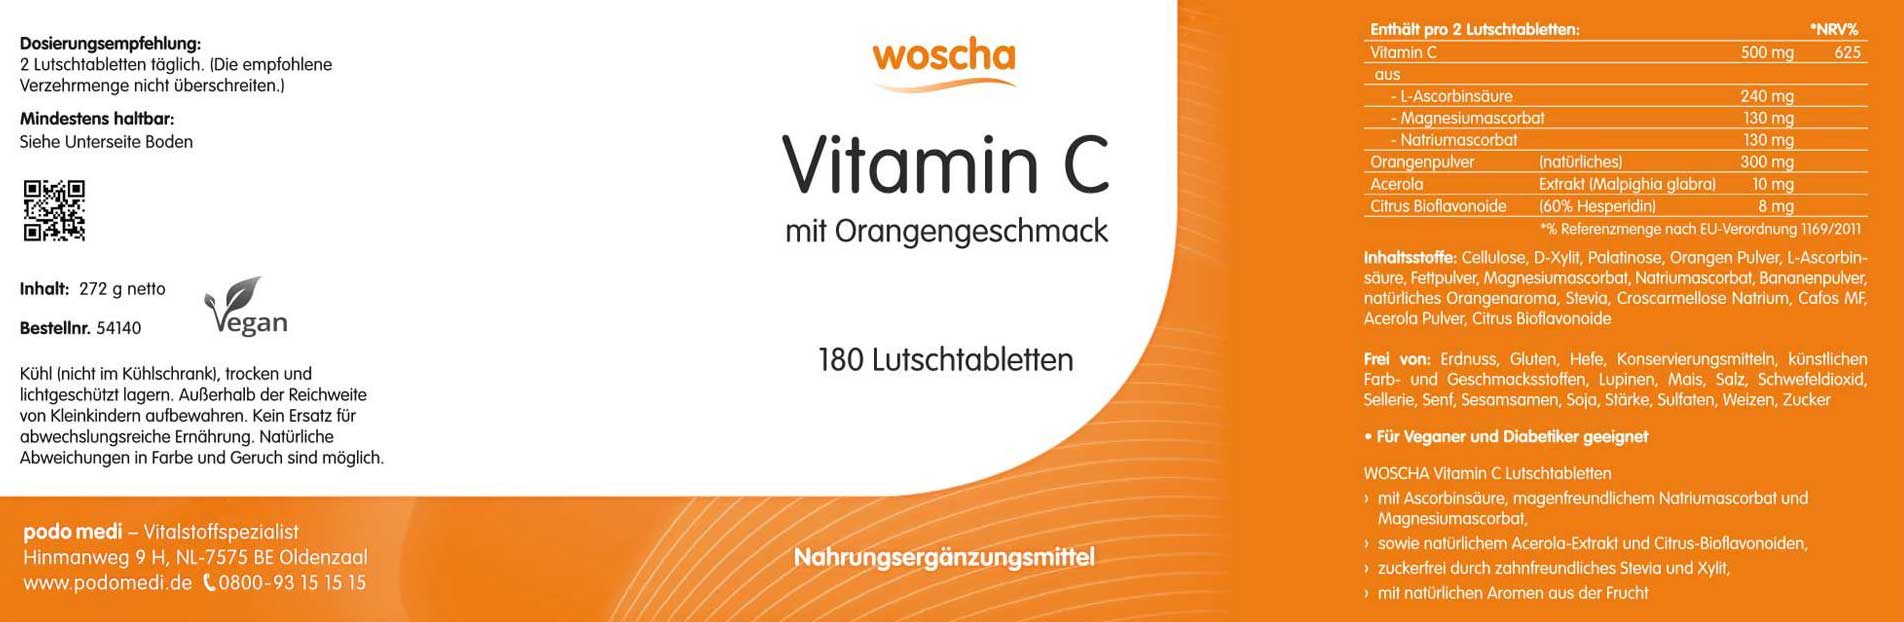 Woscha Vitamin C von podo medi beinhaltet 180 Lutschtabletten Etikett